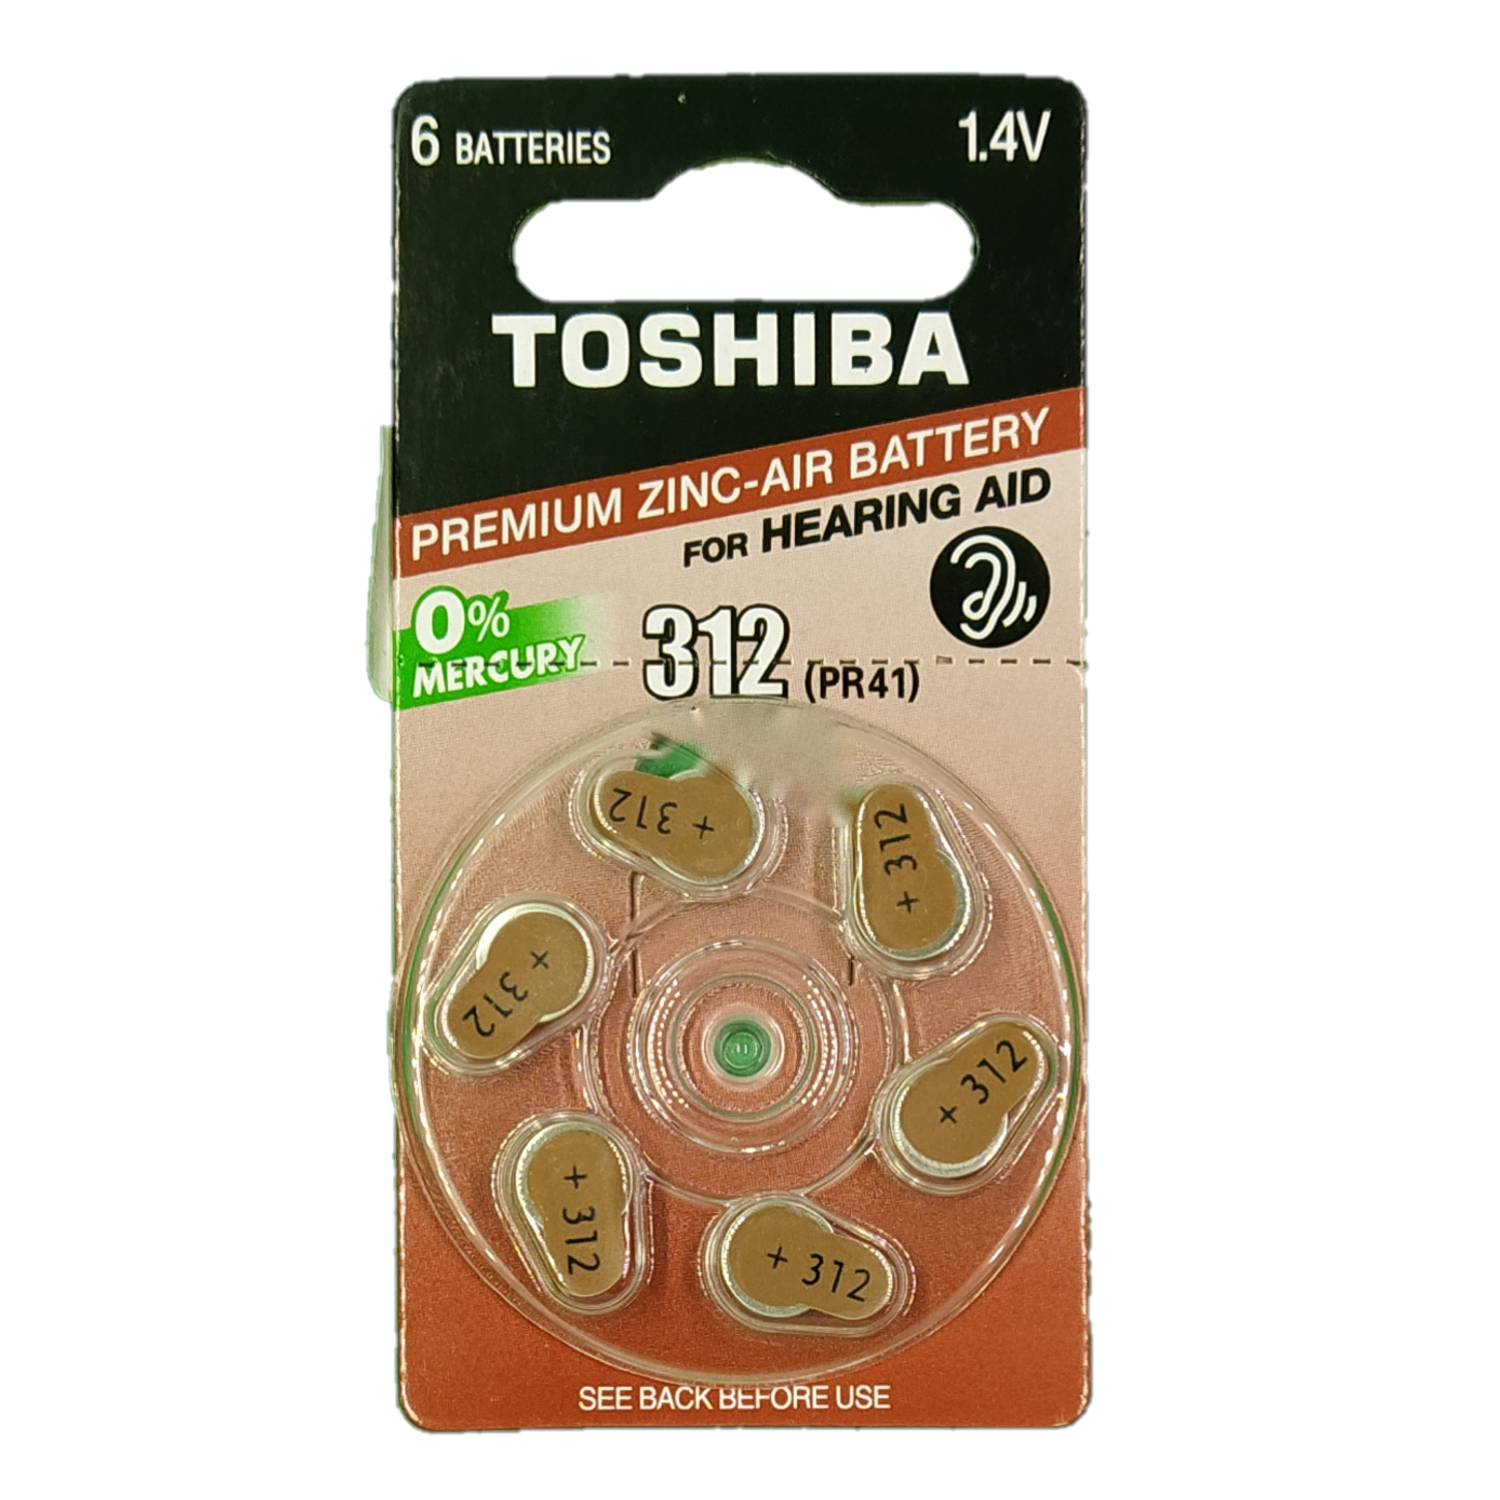 Батарейки Toshiba 312 PR41 воздушно-цинковые для слухового аппарата блистер 6шт 1.4V - фото 1